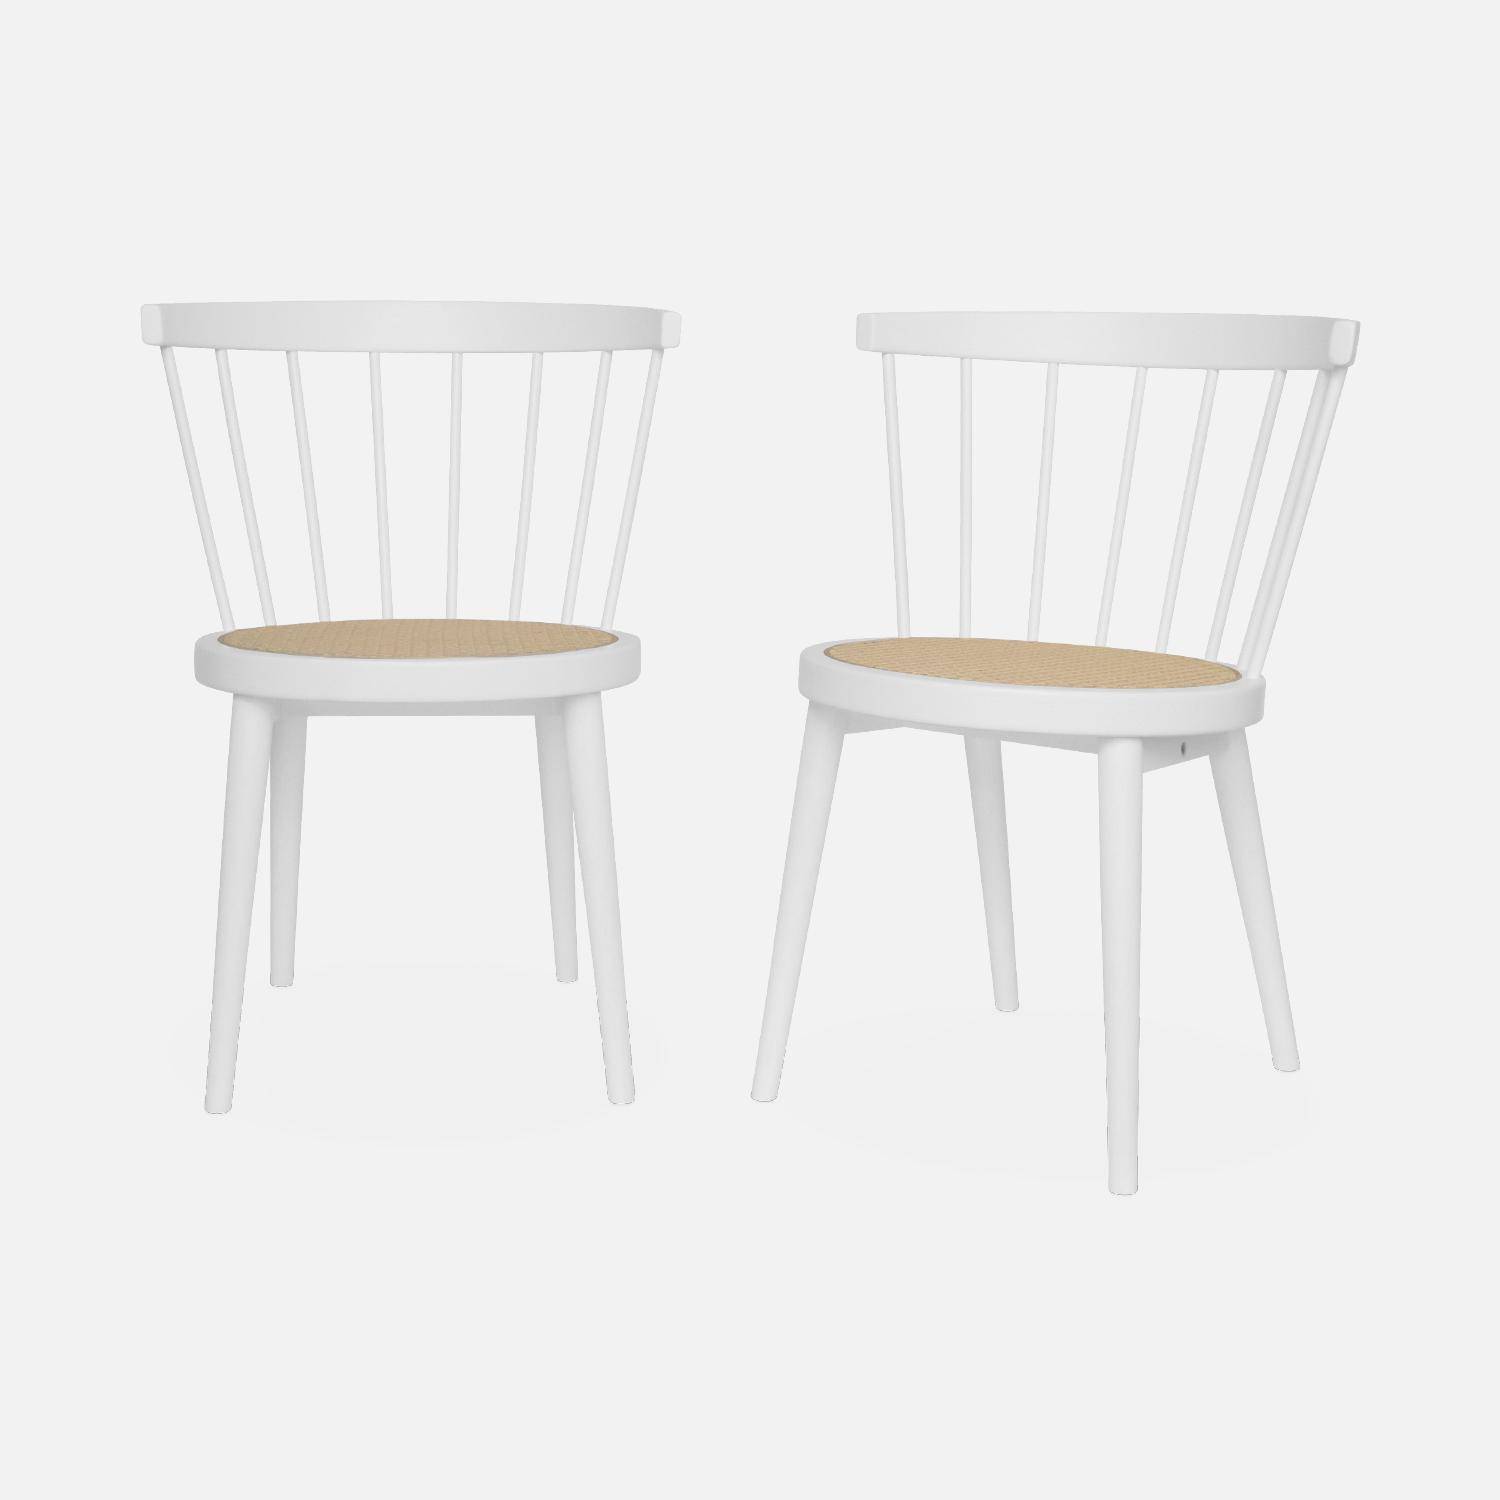 Set di 2 sedie in legno bianco e canna, Nora, L 54 x P 54 x H 76,5 cm. Photo3